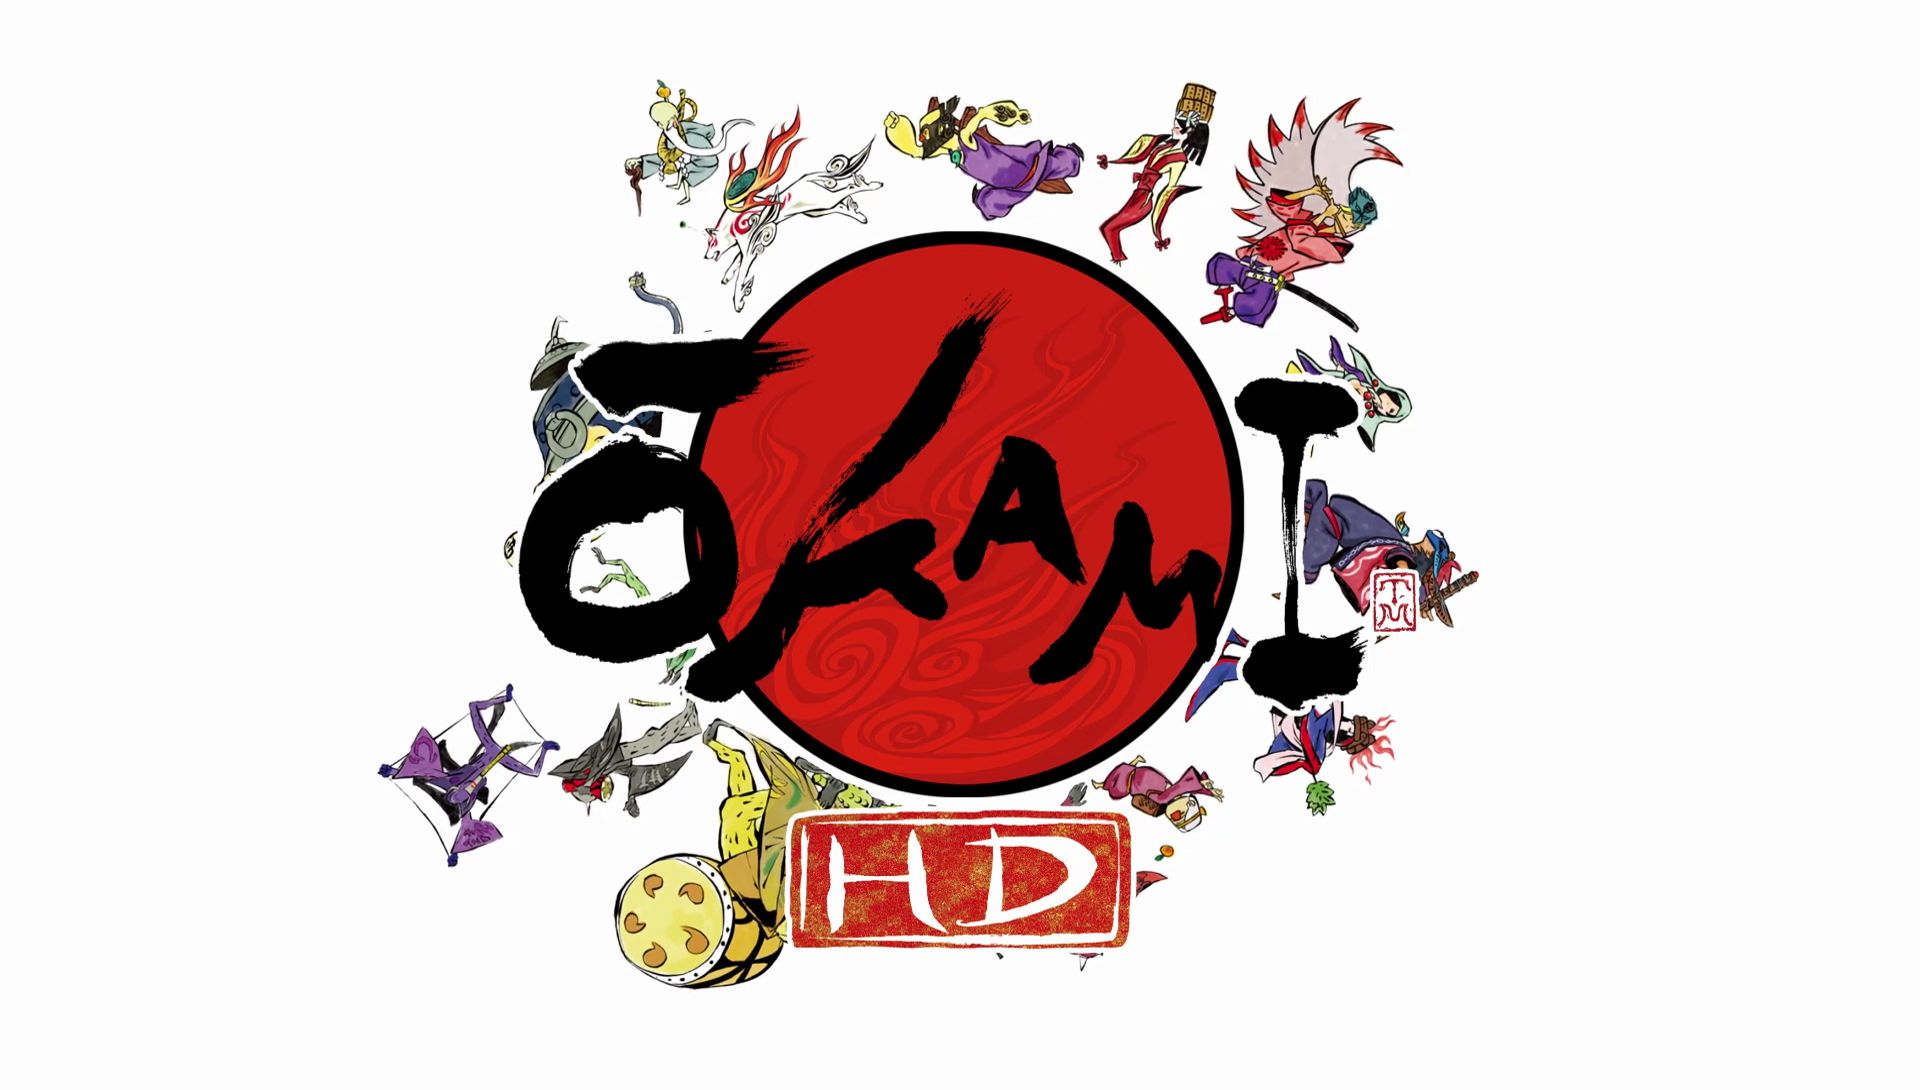 Ōkami HD Game Review